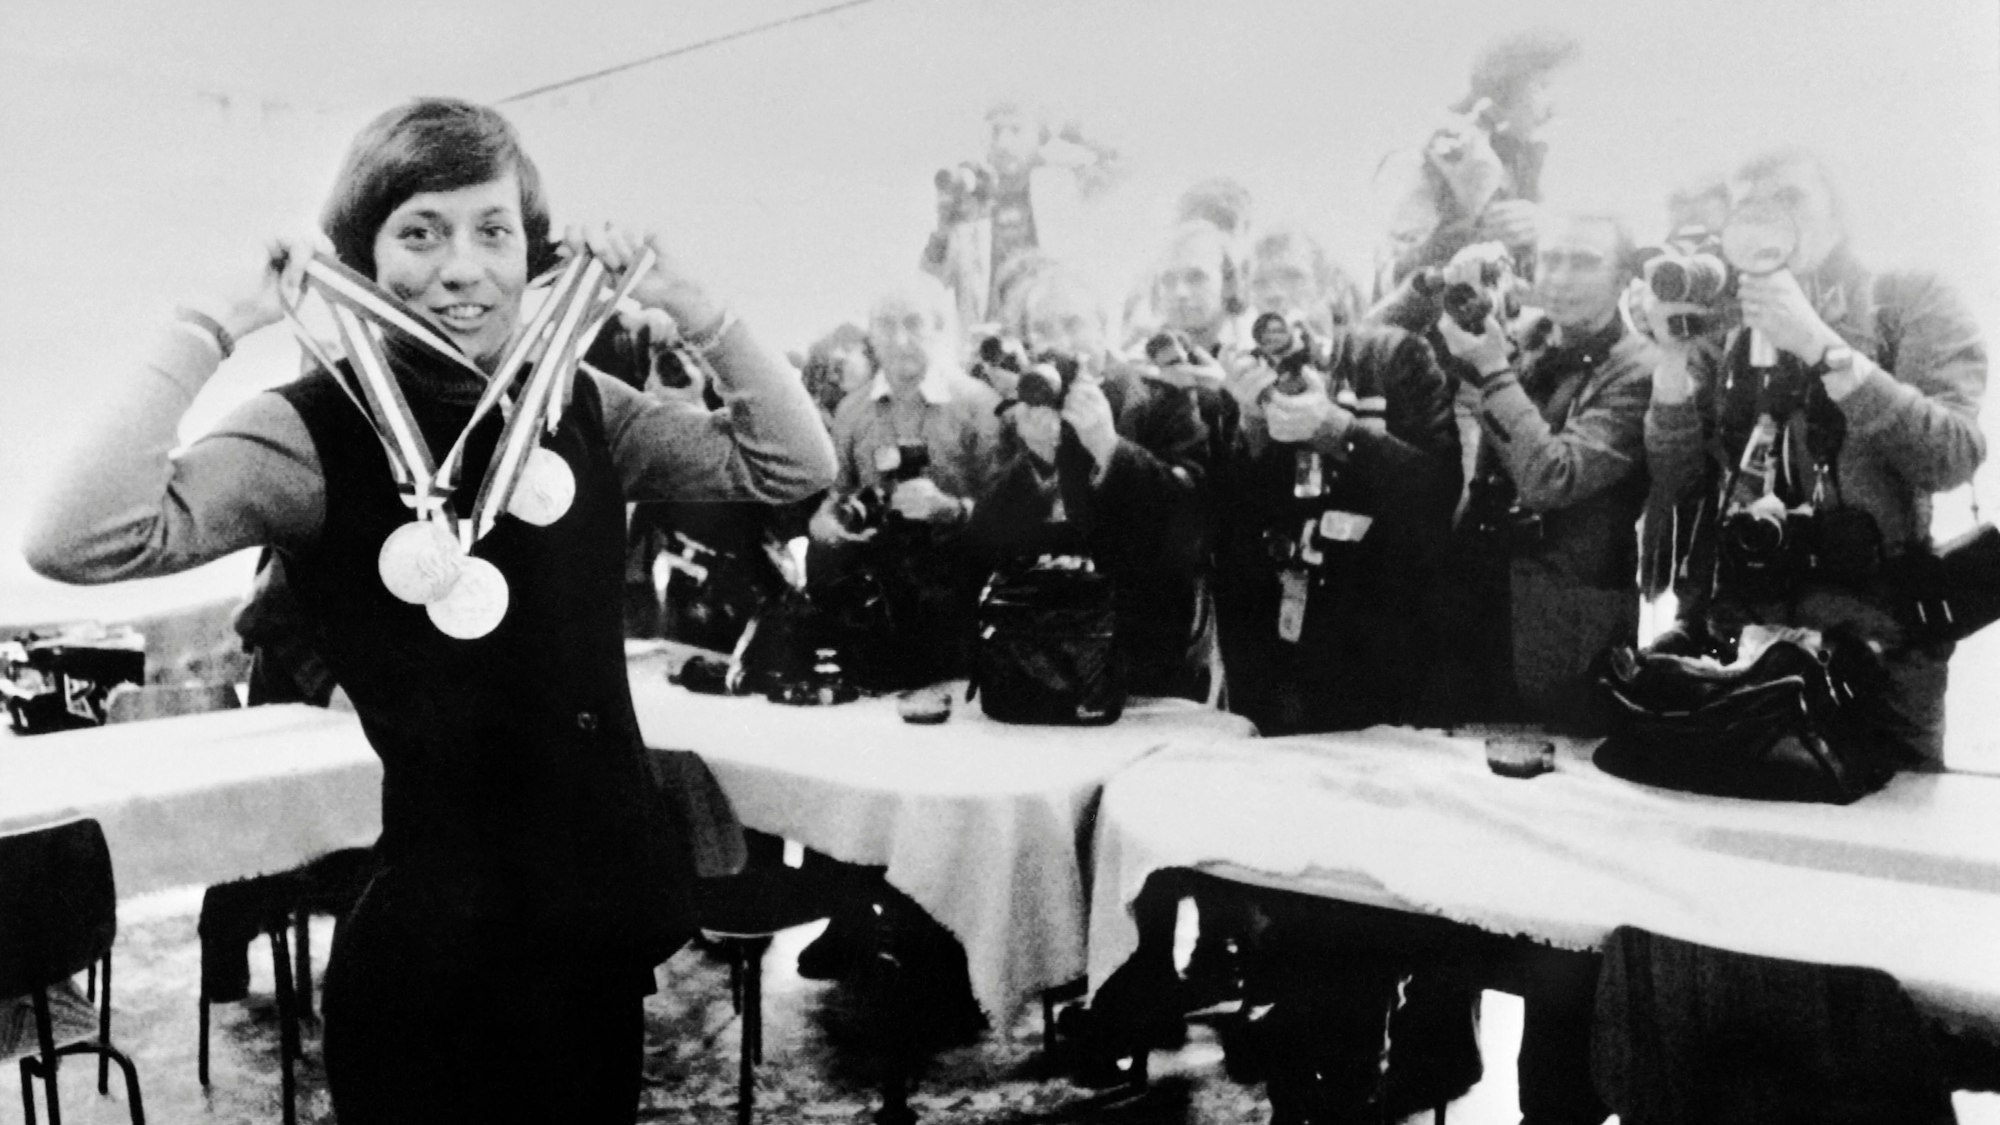 Rosi Mittermaier posiert mit ihren Medaillen, die sie bei den Olympischen Winterspielen 1976 in Innsbruck gewonnen hat, vor Fotografen.